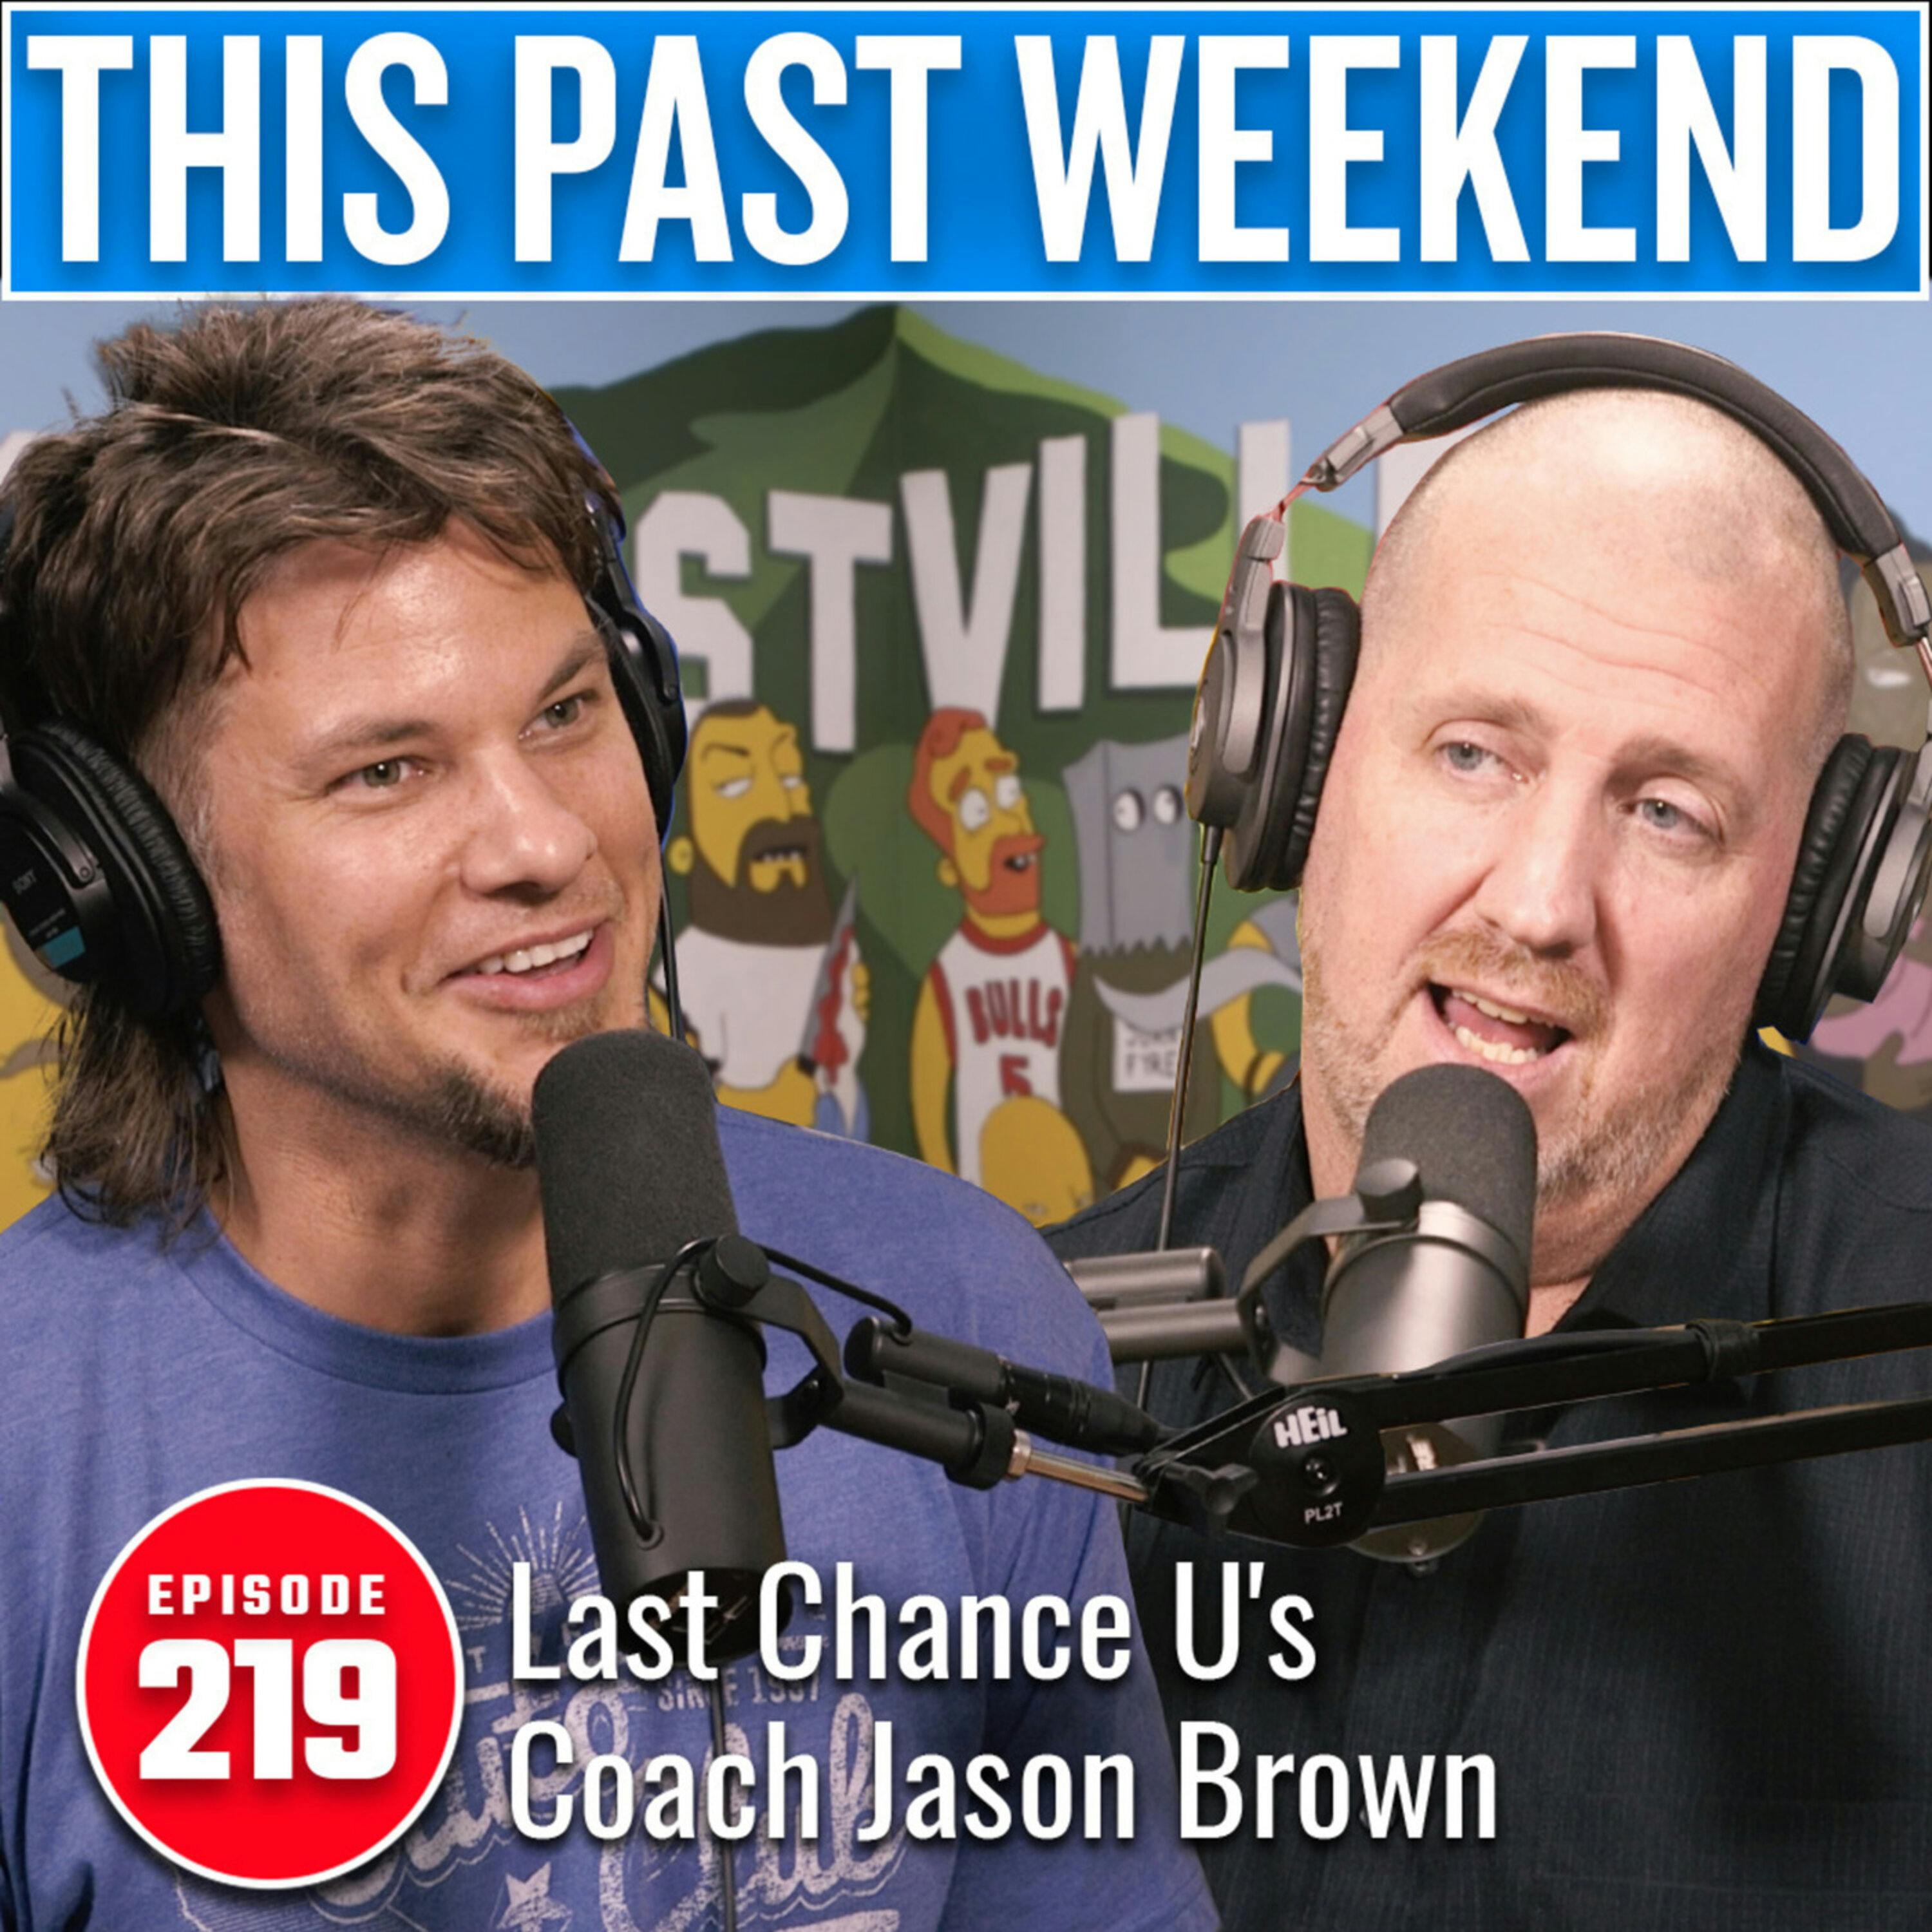 Last Chance U's Coach Jason Brown by Theo Von